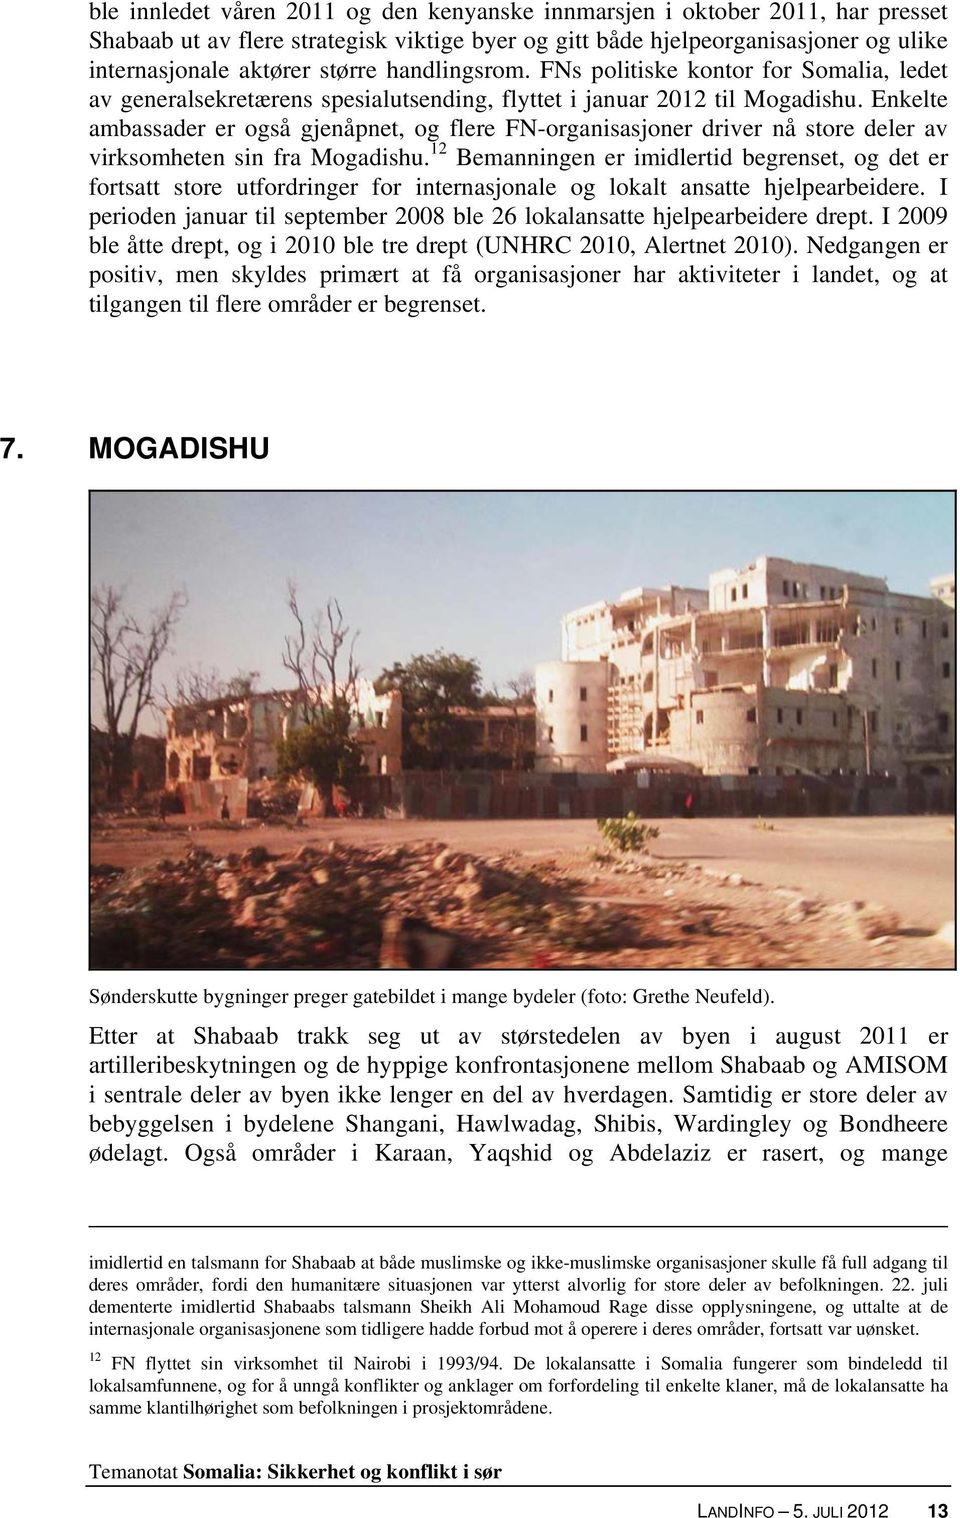 Enkelte ambassader er også gjenåpnet, og flere FN-organisasjoner driver nå store deler av virksomheten sin fra Mogadishu.